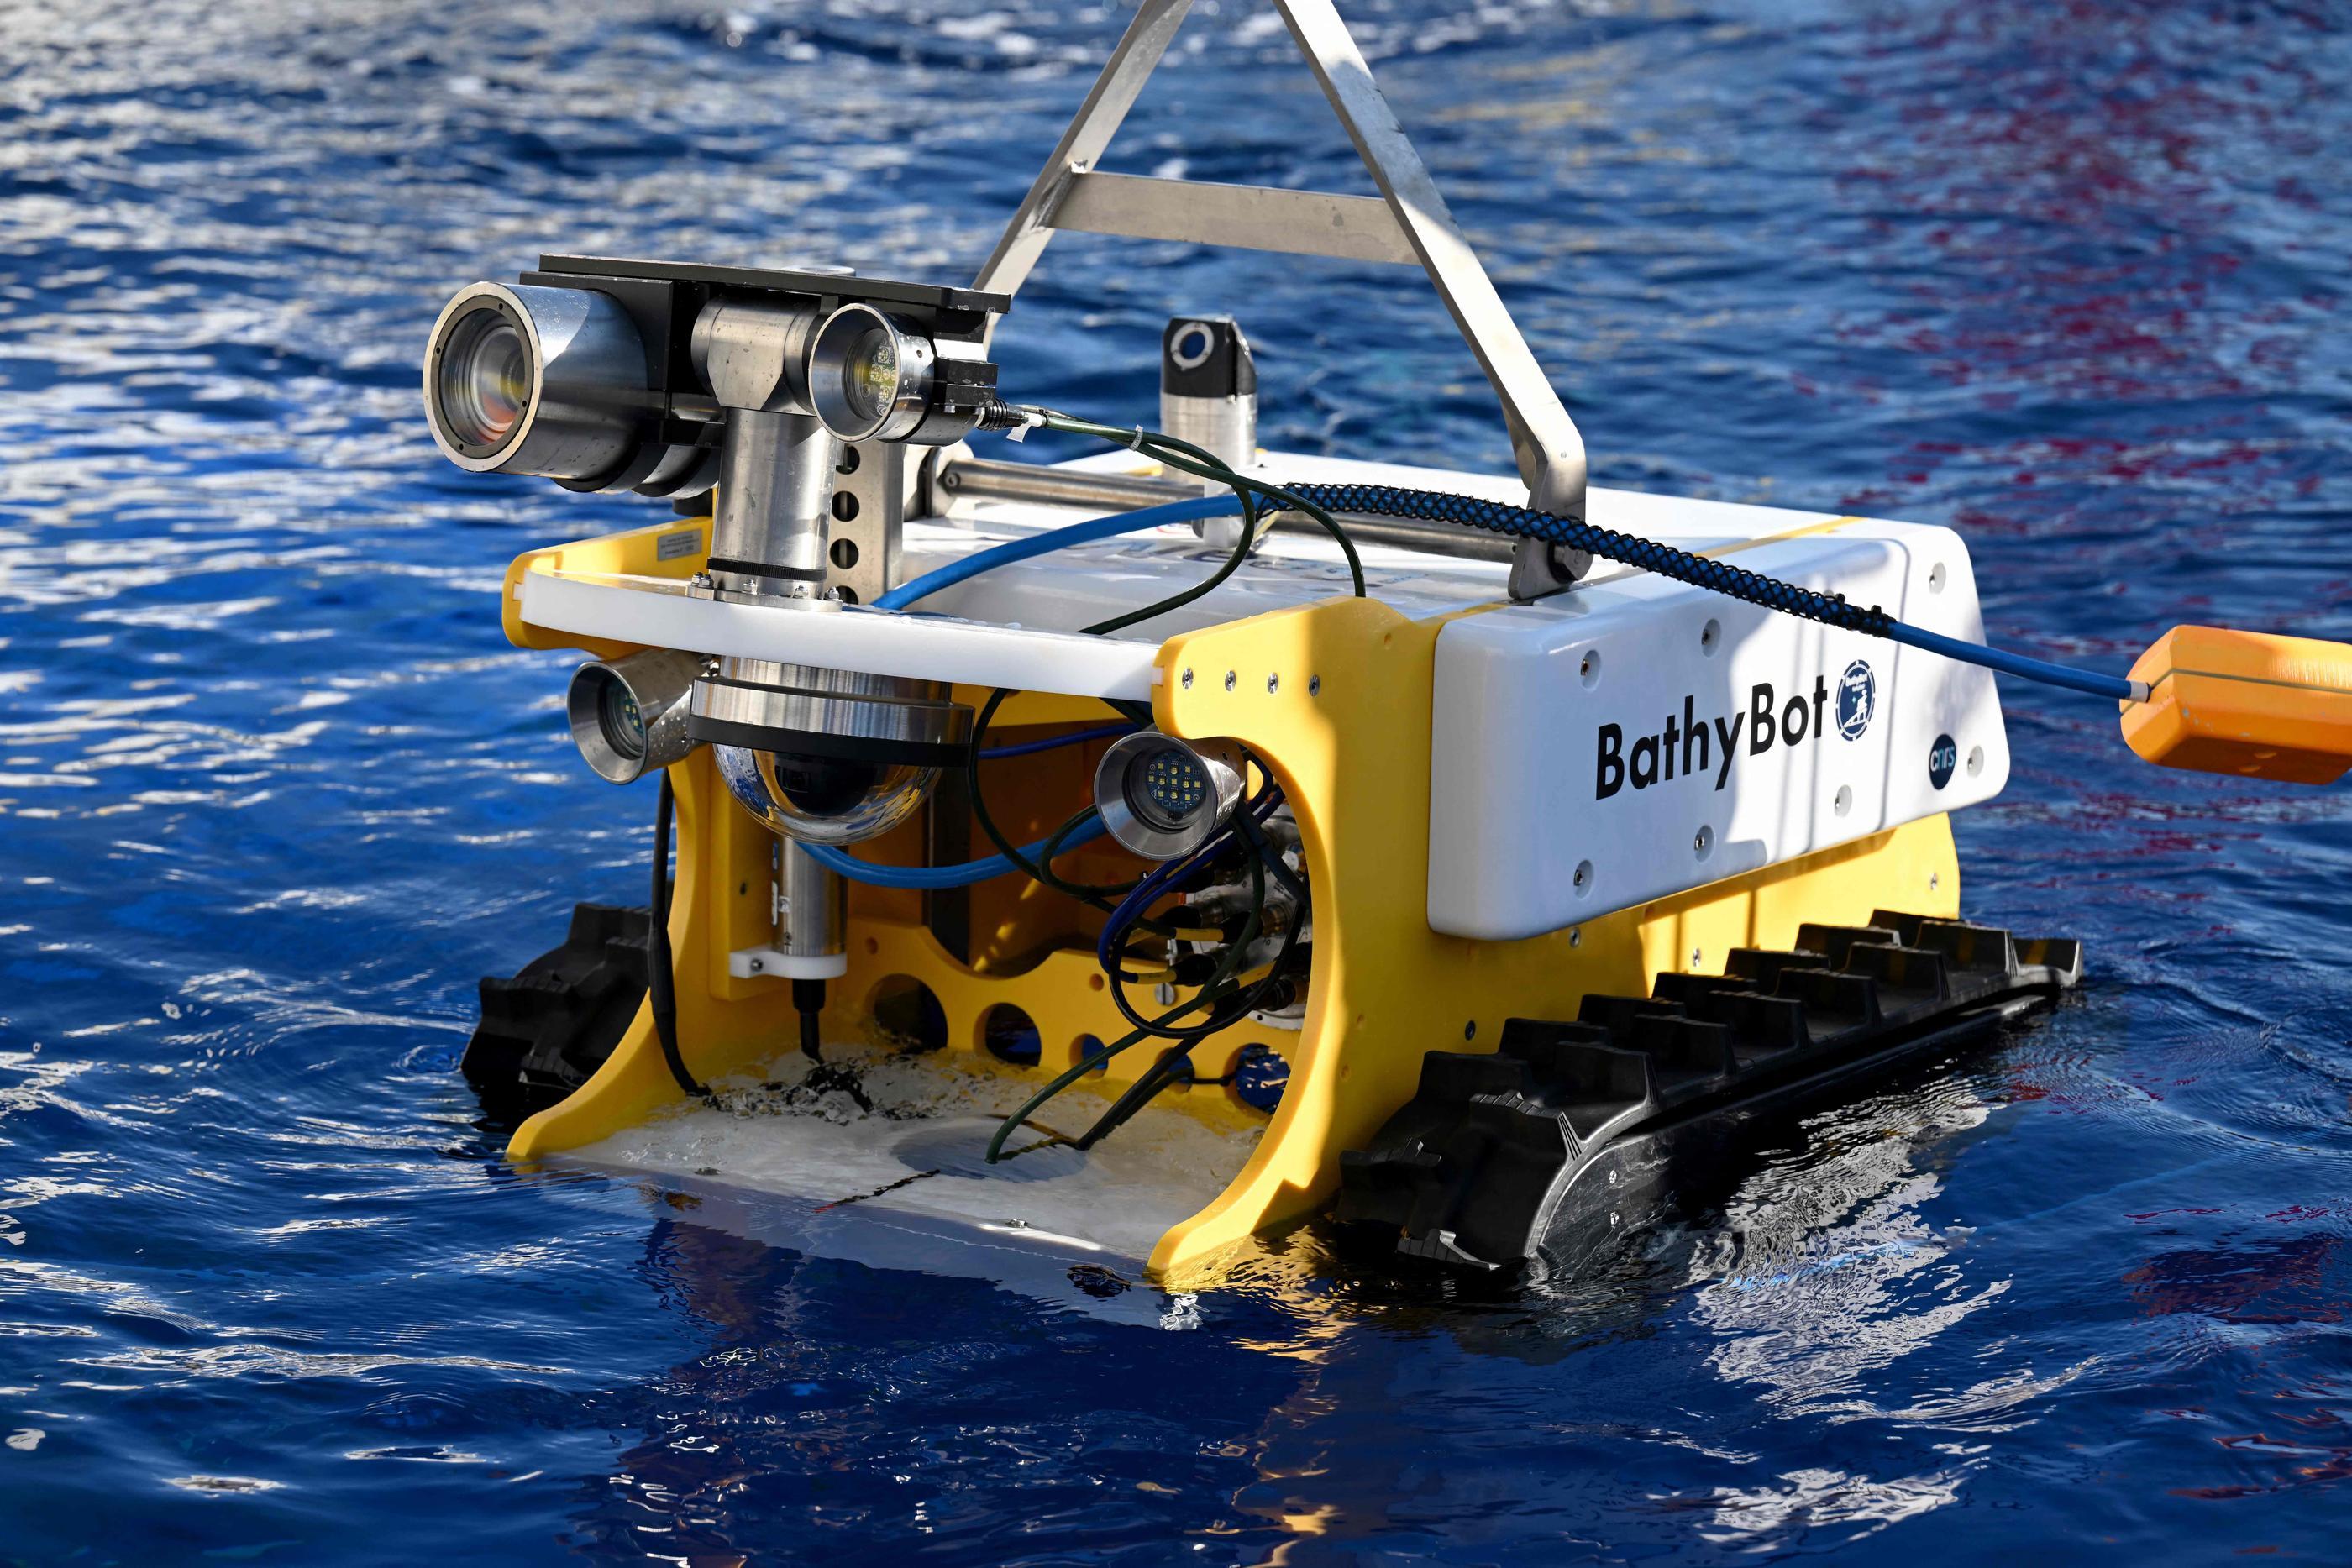 Le MIT a conçu ce nouveau poisson-robot pour explorer les fonds marins 